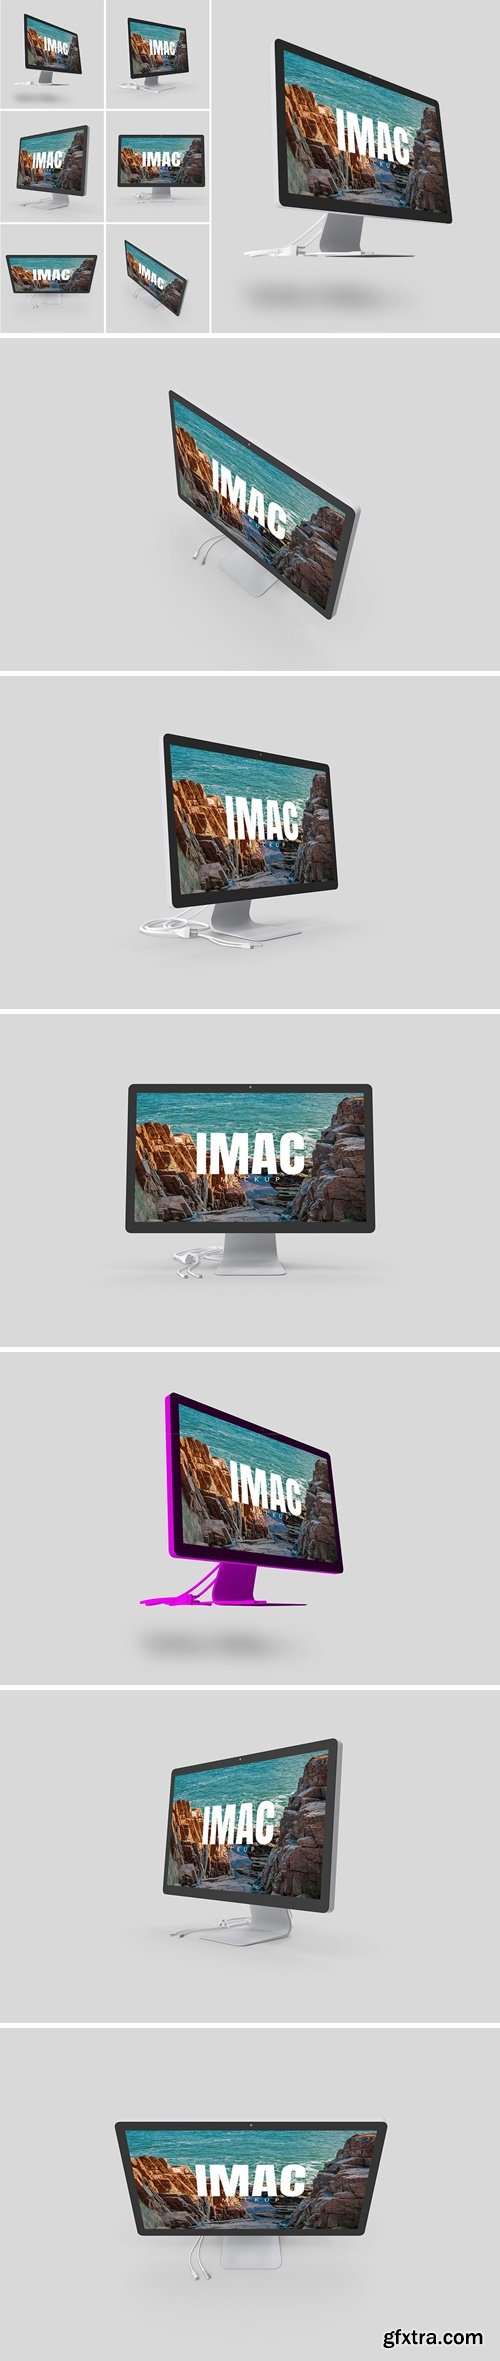 iMac Mockup UTDGN67